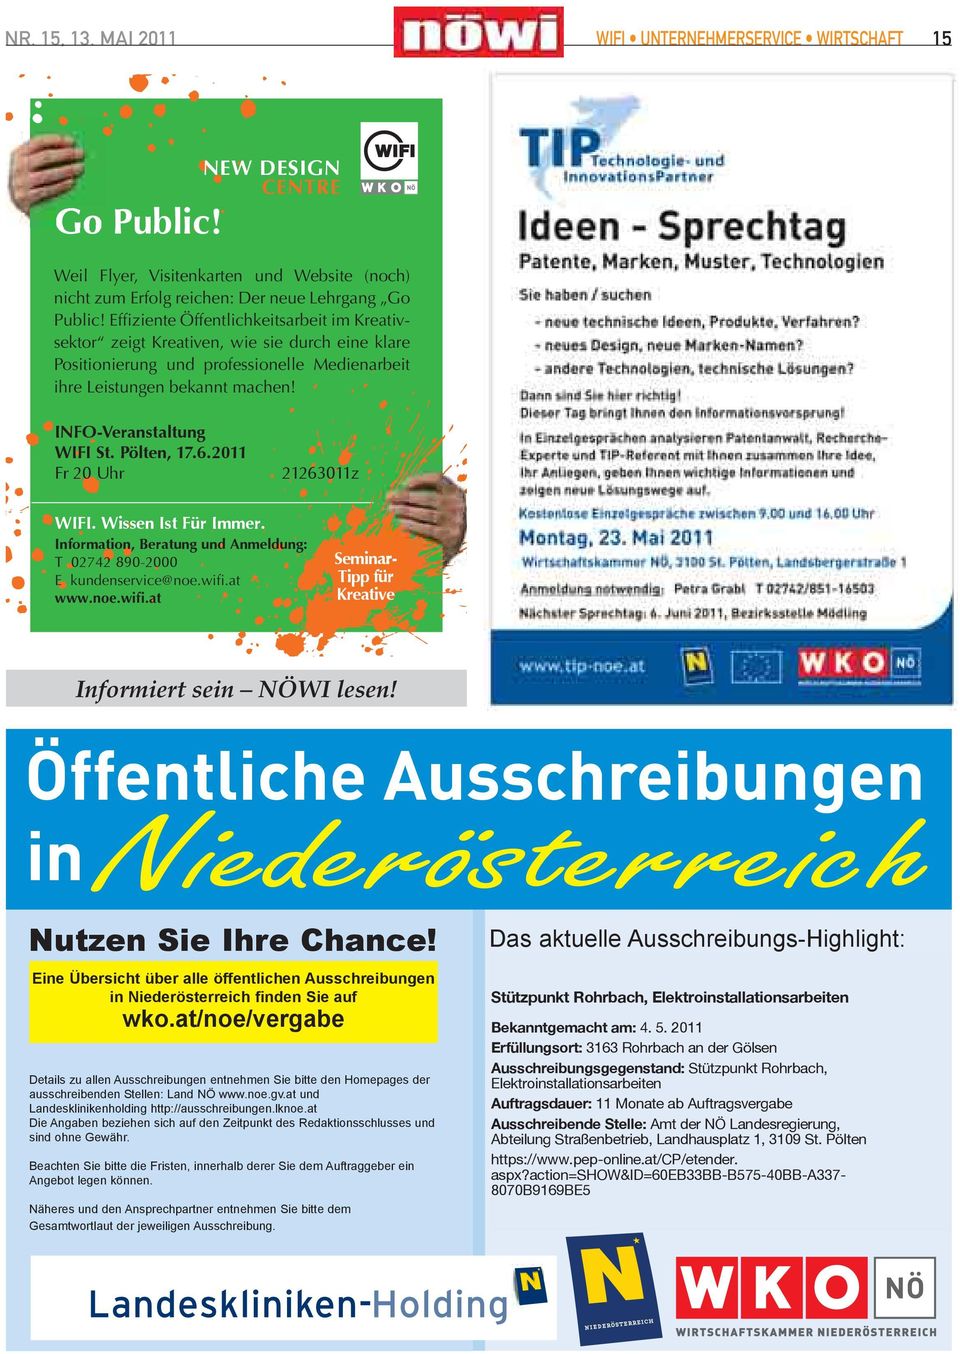 Eine Übersicht über alle öffentlichen Ausschreibungen in Niederösterreich finden Sie auf wko.